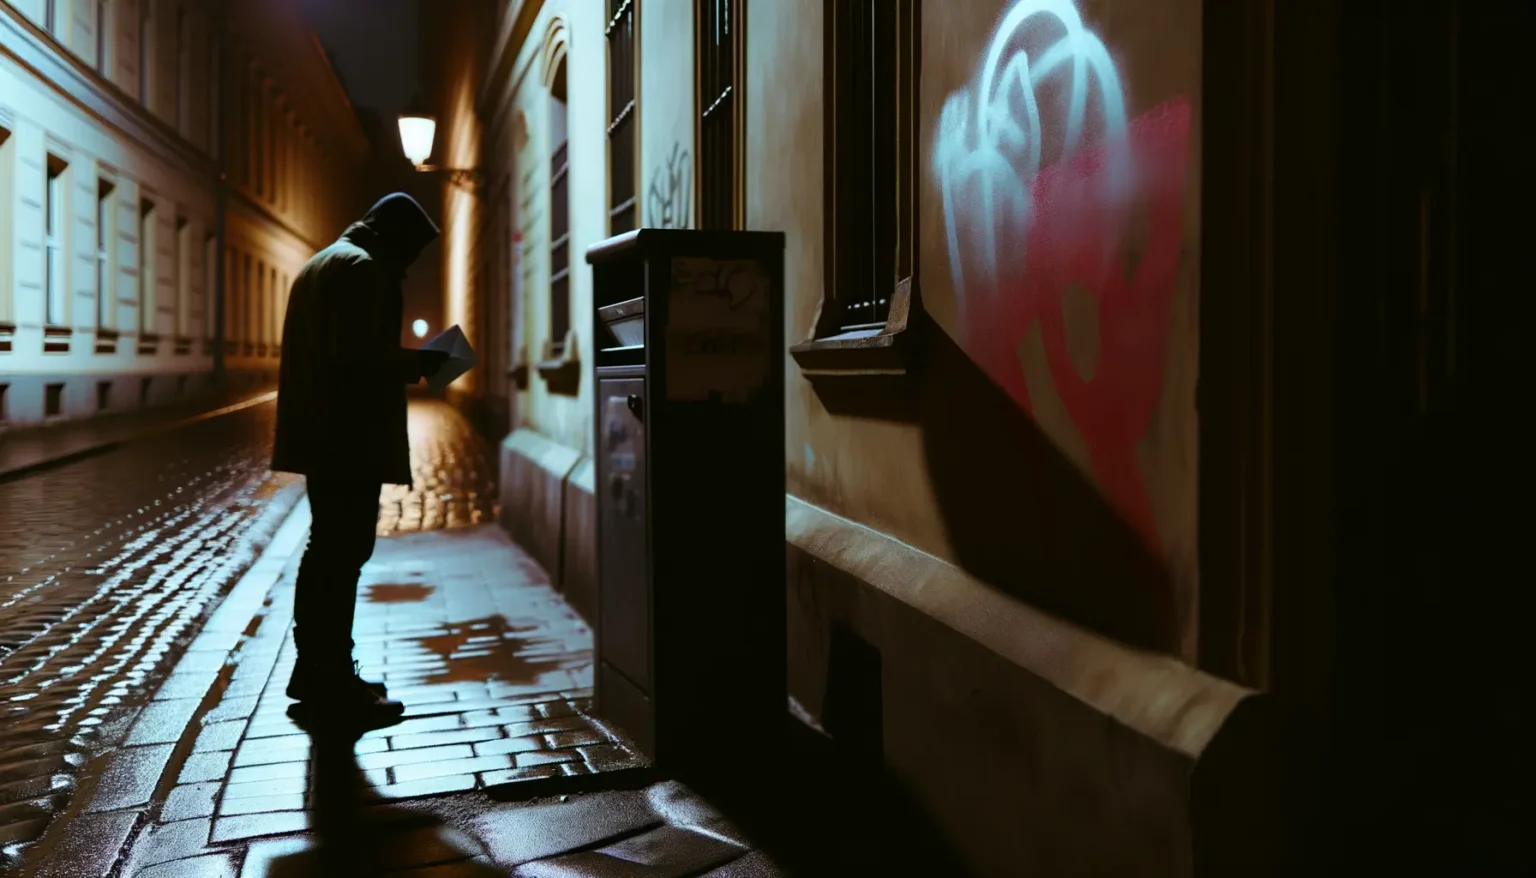 Eine Person in dunkler Kleidung und mit Kapuze steht nachts in einer beleuchteten Straße und liest etwas auf einem Blatt Papier. Im Hintergrund an einer Wand ist ein leuchtendes Graffiti-Herz sichtbar. Die Szene wird von feuchtem Kopfsteinpflaster und der warmen Straßenbeleuchtung atmosphärisch in Szene gesetzt.